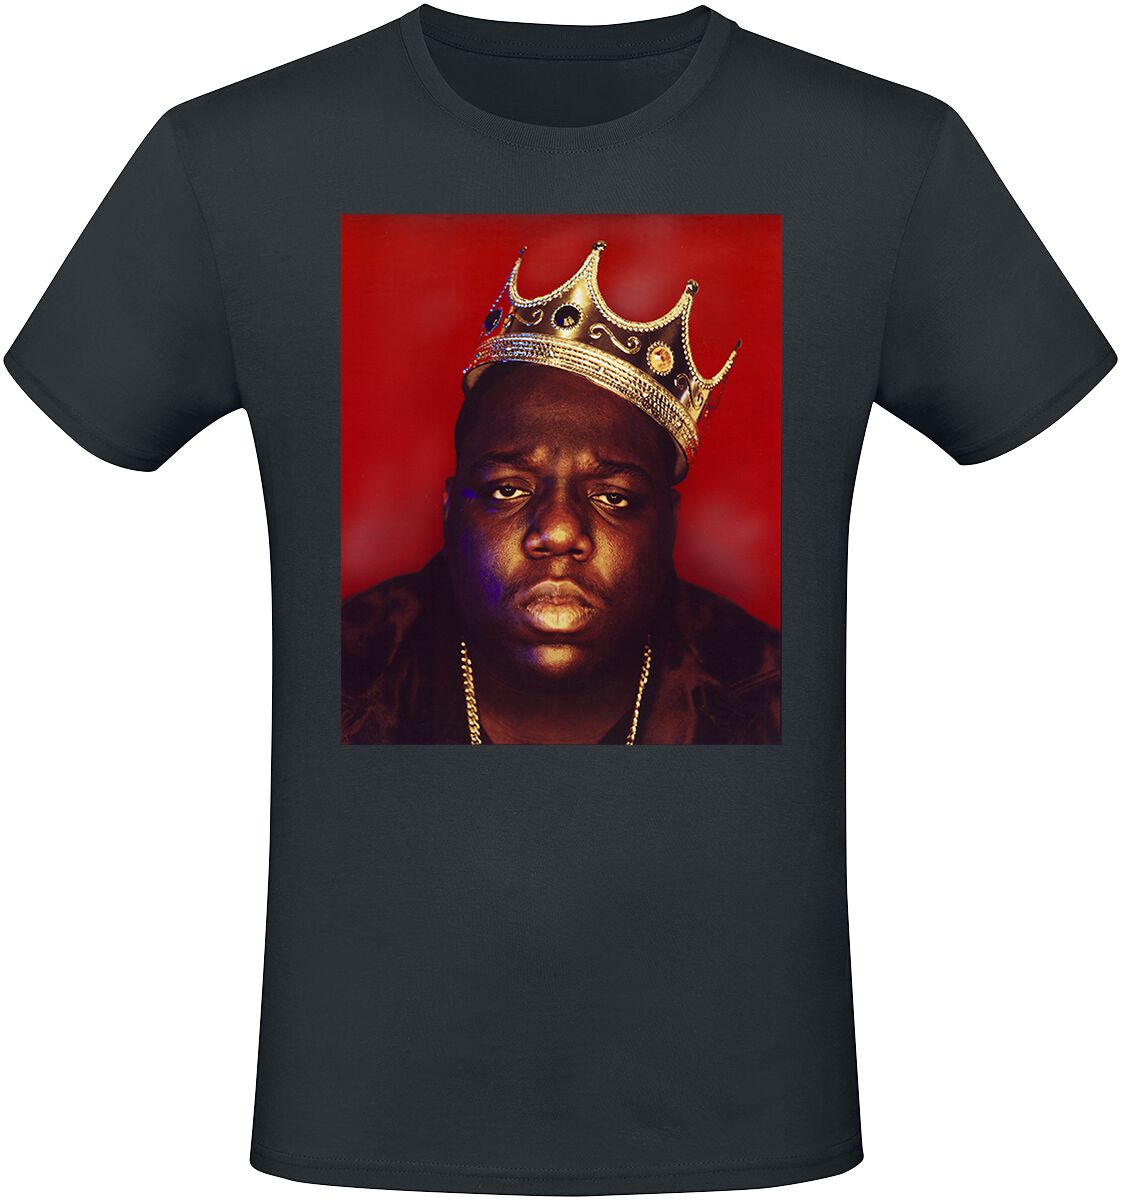 Notorious B.I.G. T-Shirt - Big Crown - S bis XXL - für Männer - Größe L - schwarz  - Lizenziertes Merchandise!